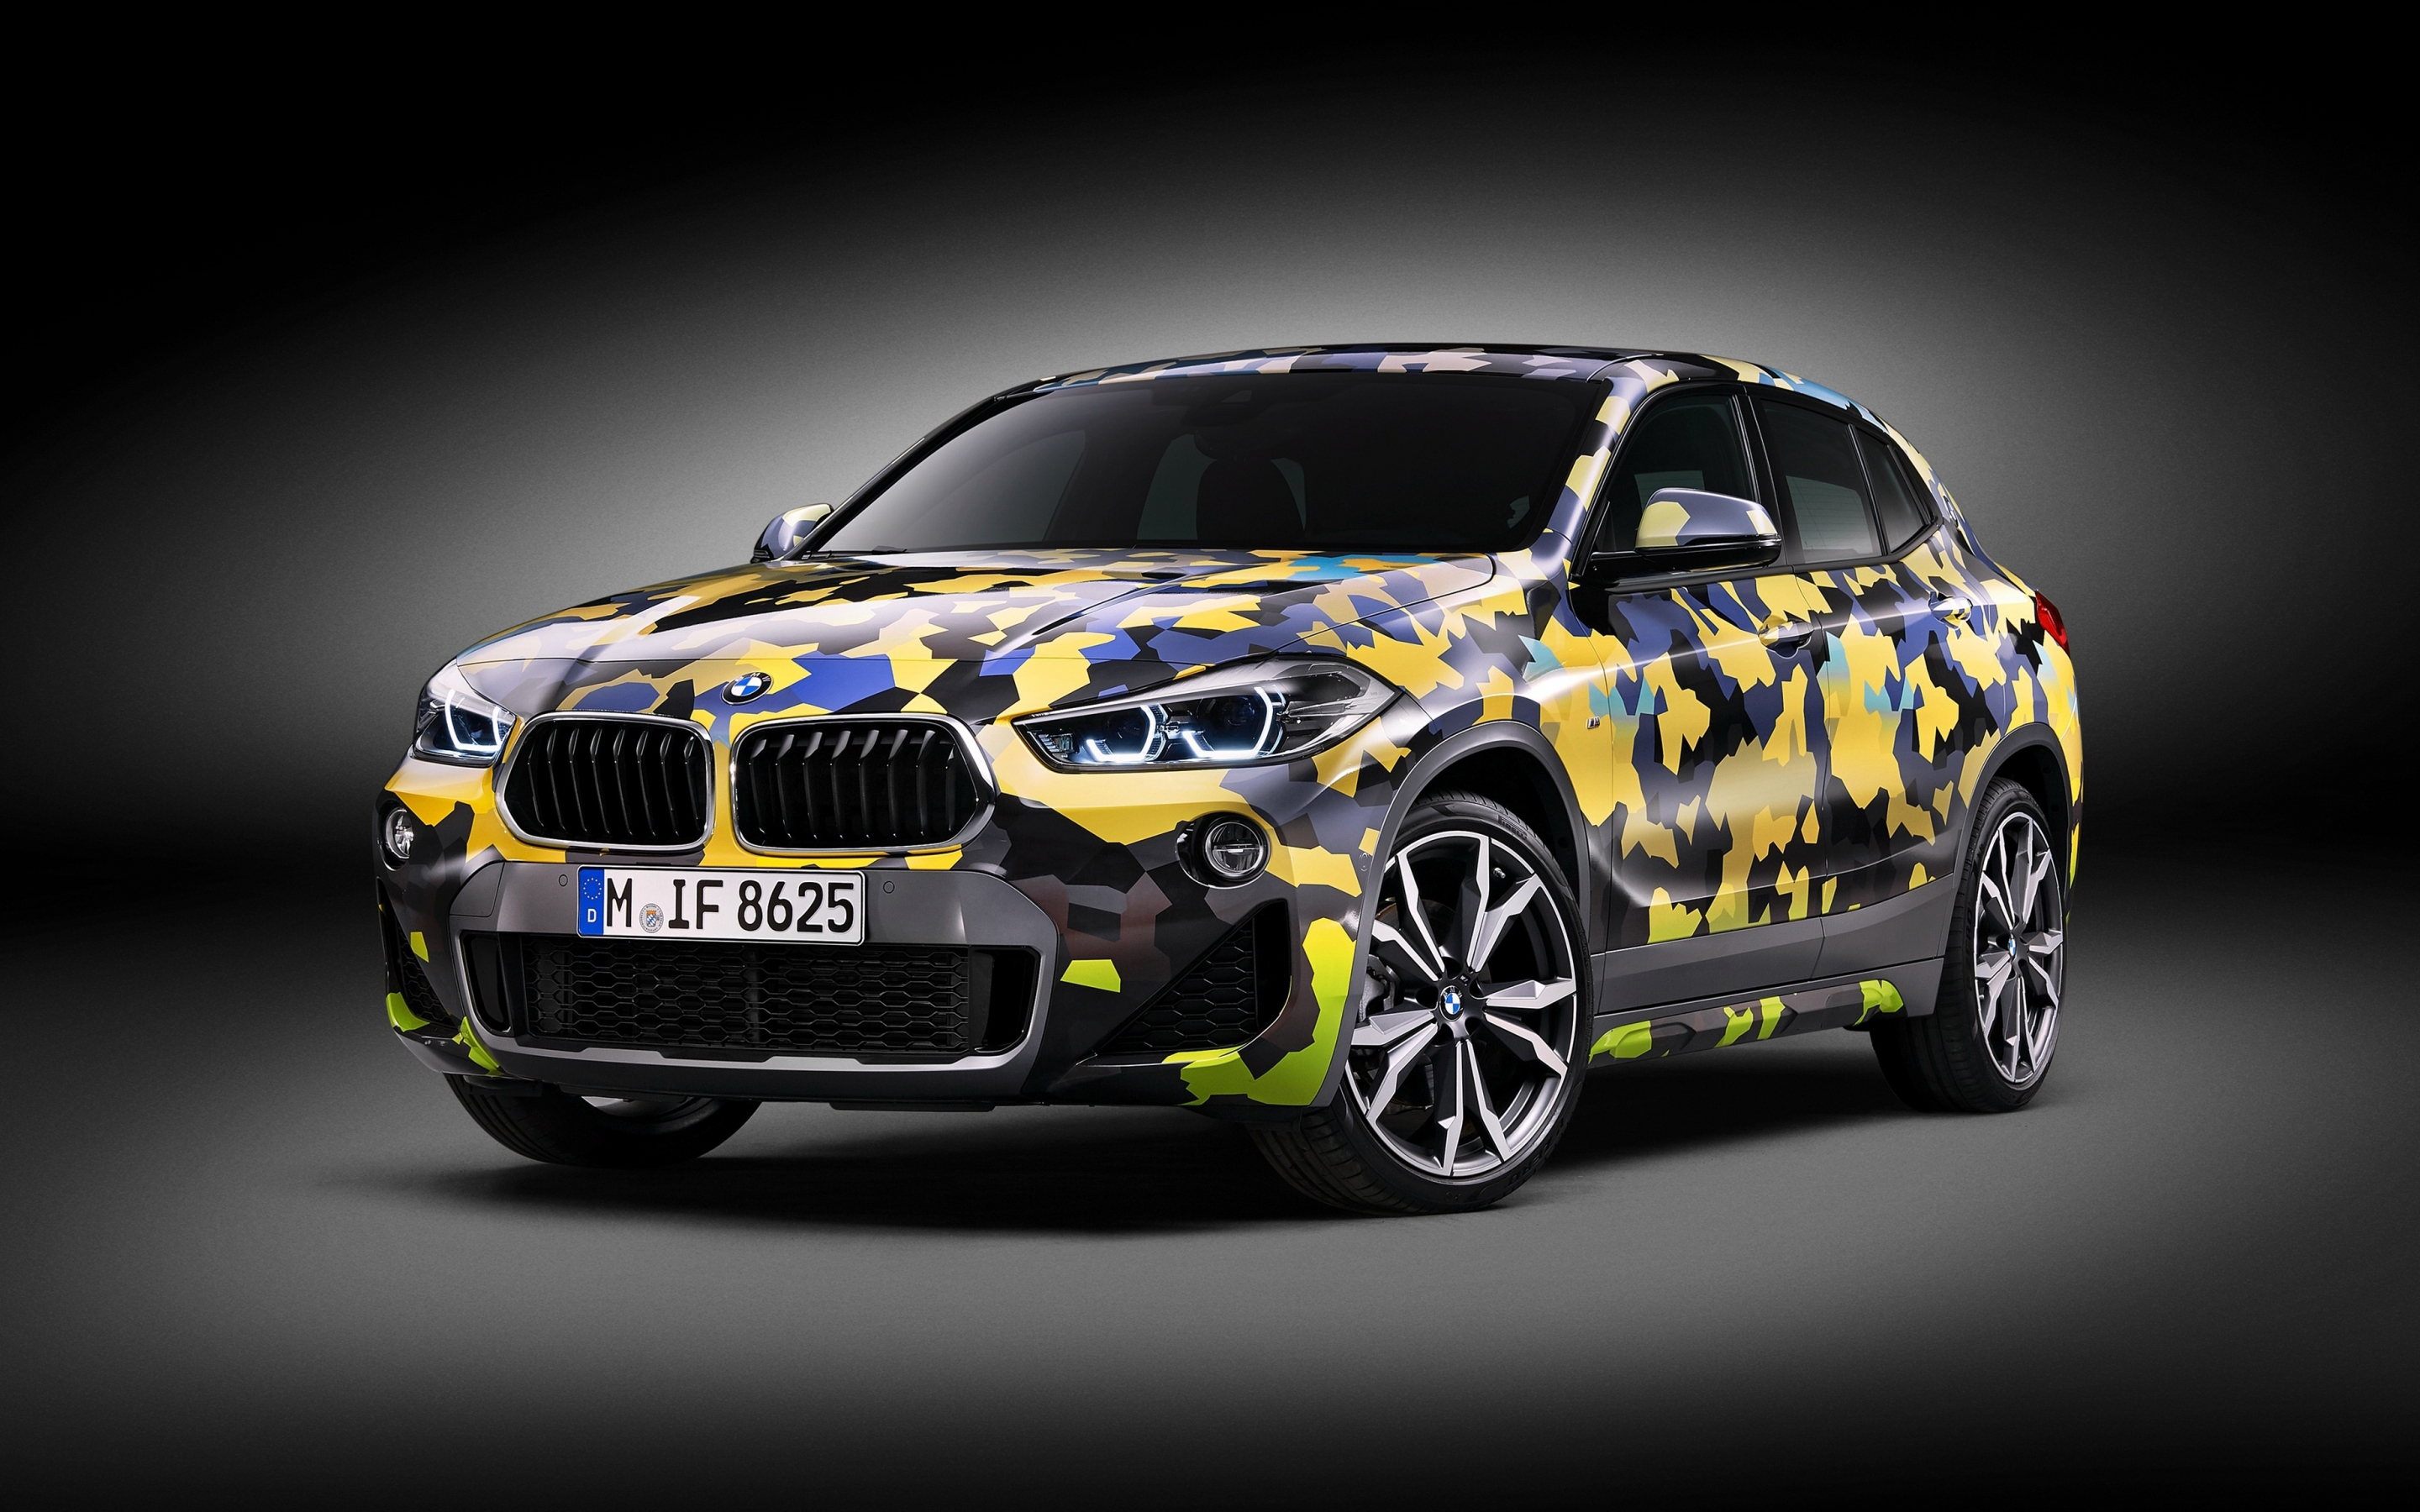 2018 BMW x2 Digital Camo, concept car, 2880x1800 wallpaper